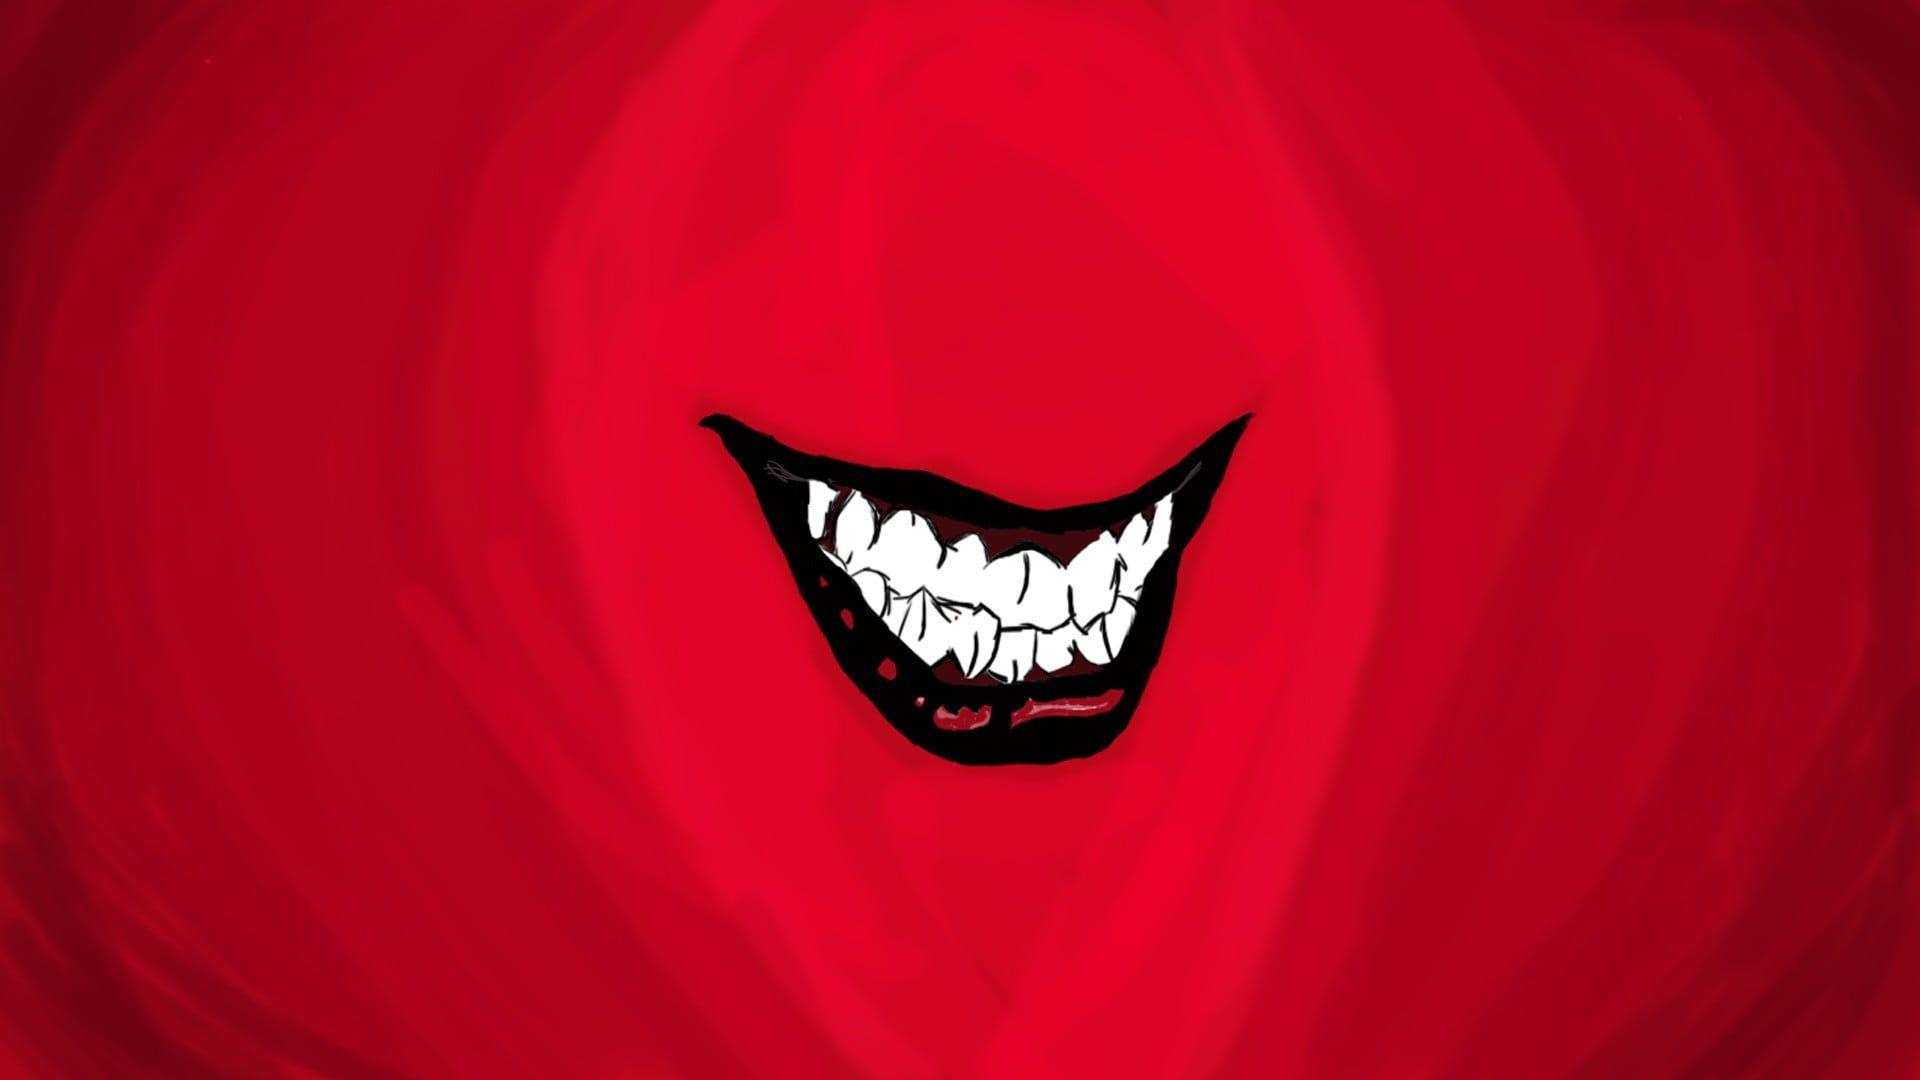 1920x1080 Minh họa răng cười màu đỏ, trắng và đen, Joker